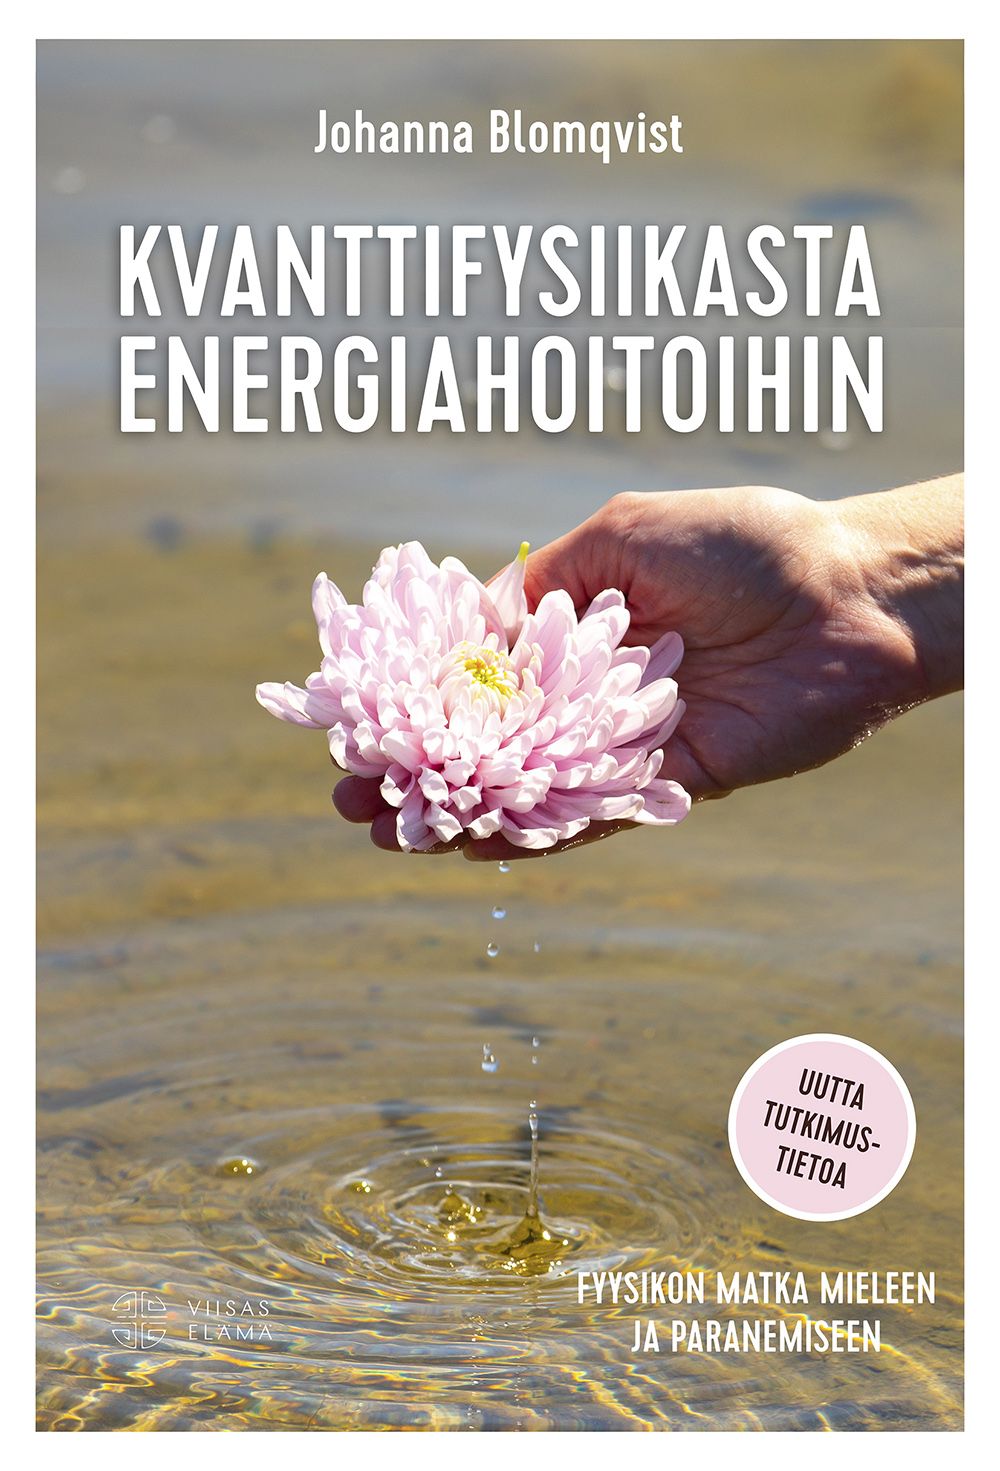 Johanna Blomqvist : Kvanttifysiikasta energiahoitoihin